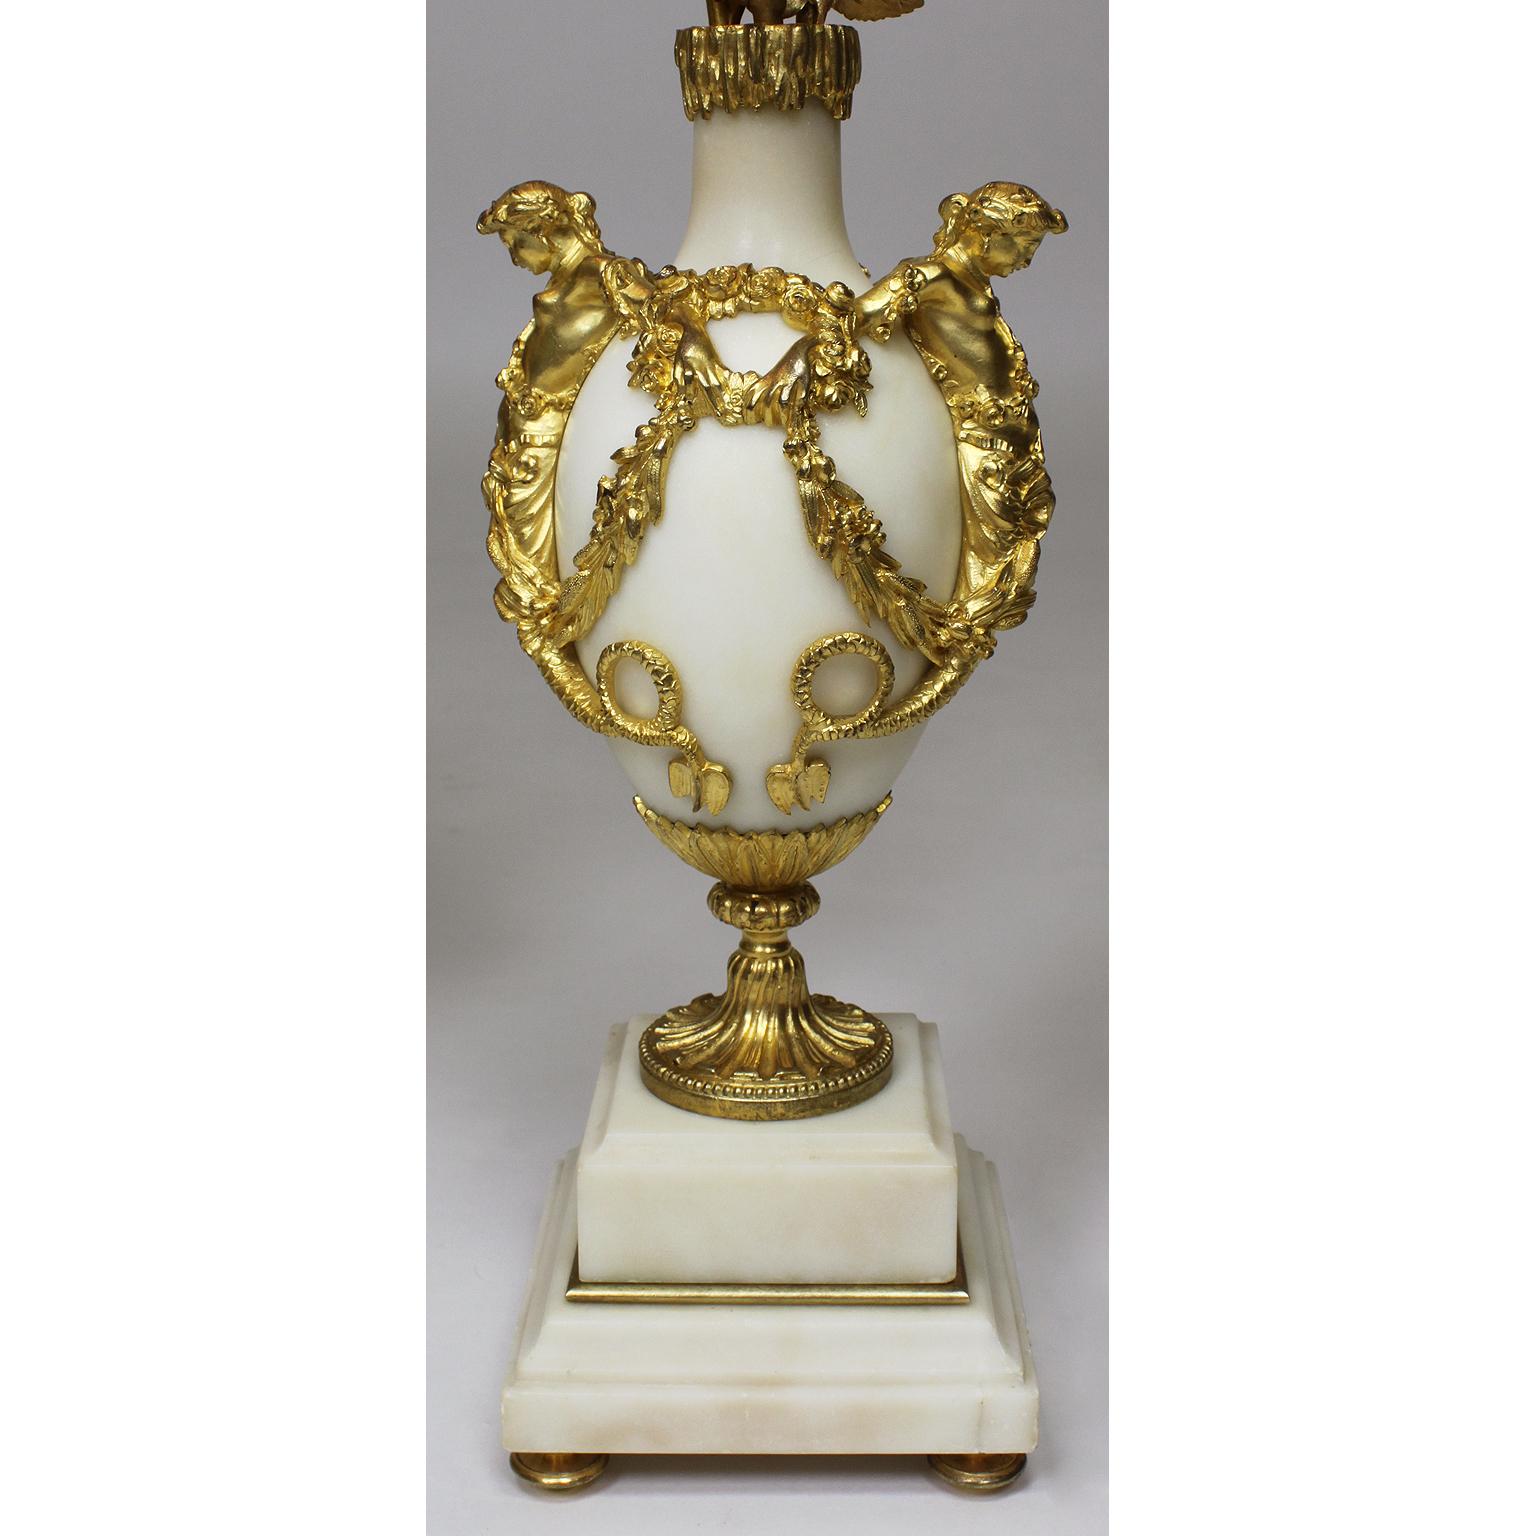 Ein erstklassiges Paar französischer Marmor- und Goldbronze-Kandelaber des 19. Jahrhunderts mit figuraler Urne und drei Lichtern. Eiförmiger Korpus aus weißem Marmor mit einem Paar Nixen, die sich mit Blumenkränzen an den Händen halten, darunter ein